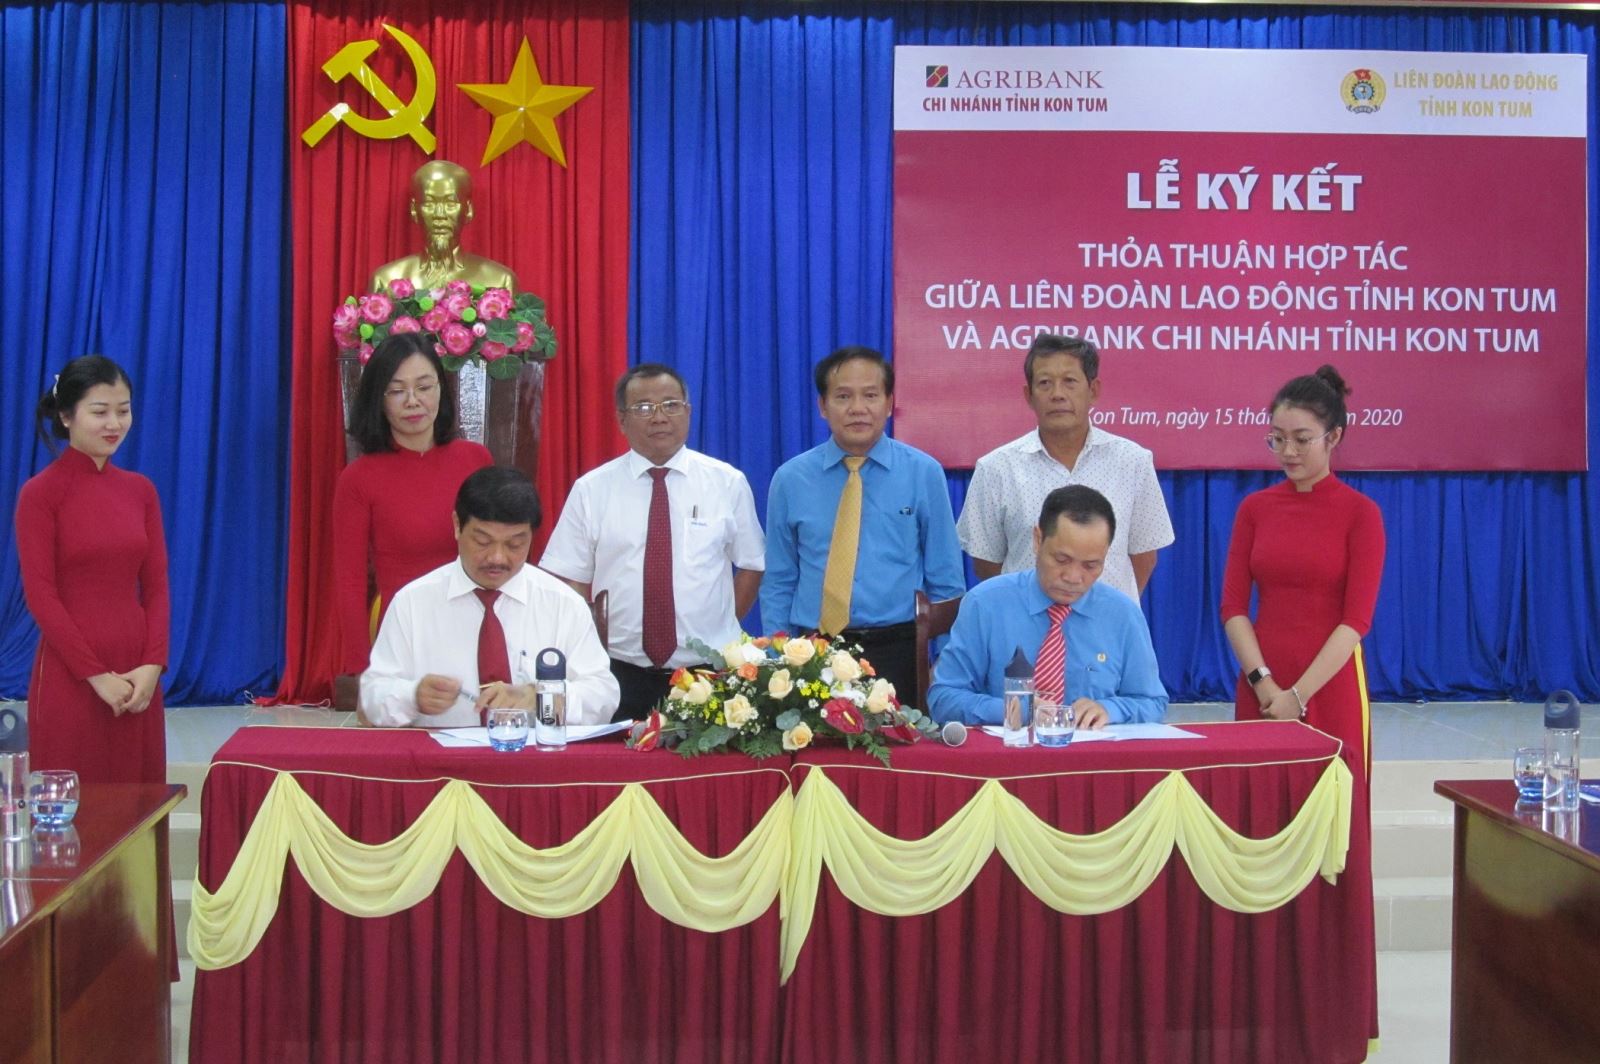 Liên đoàn Lao động tỉnh và Ngân hàng AGRIBANK chi nhánh tỉnh Kon Tum ký kết thỏa thuận hợp tác